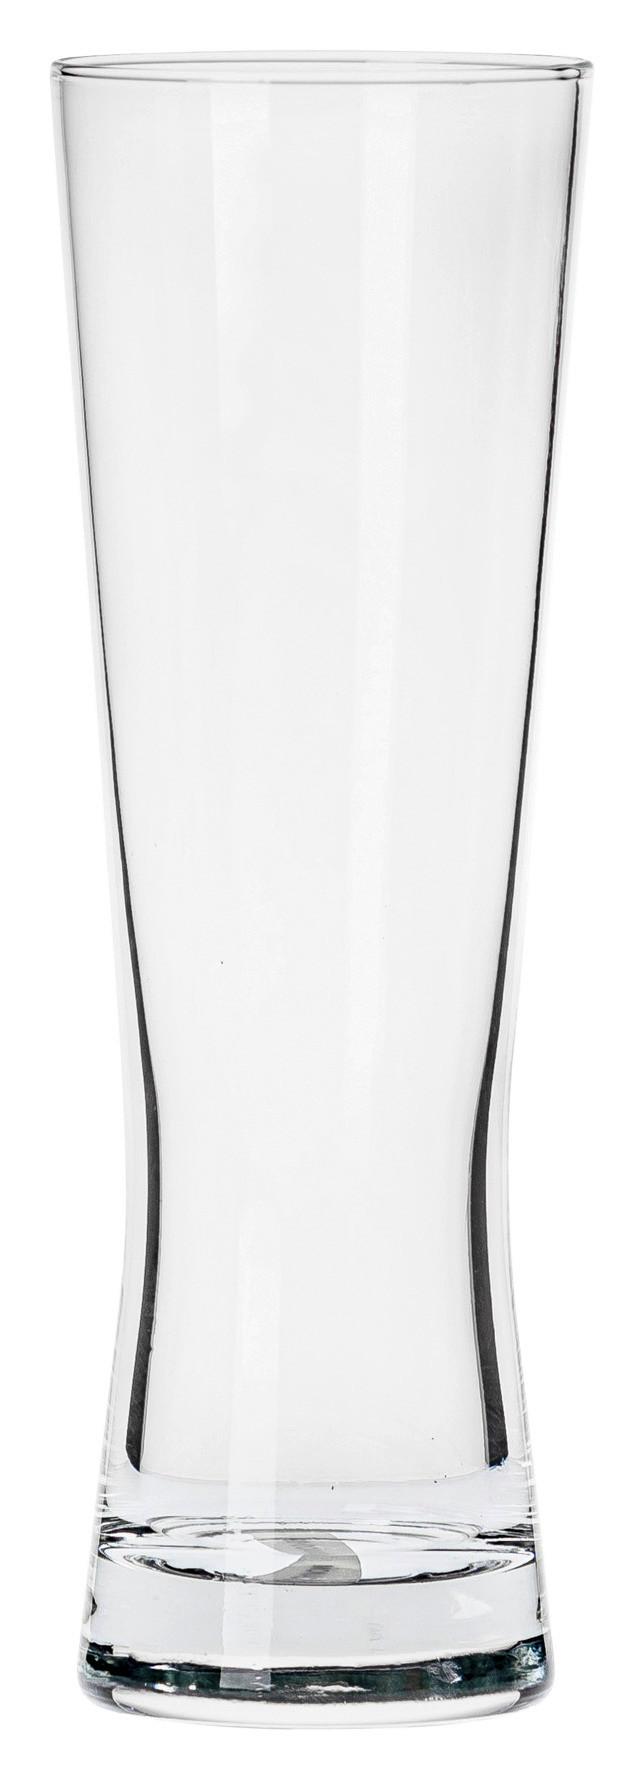 Sklenice Na Pivo Seidel - 0,3l - čiré, Konvenční, sklo (6,8/20,7cm) - Modern Living